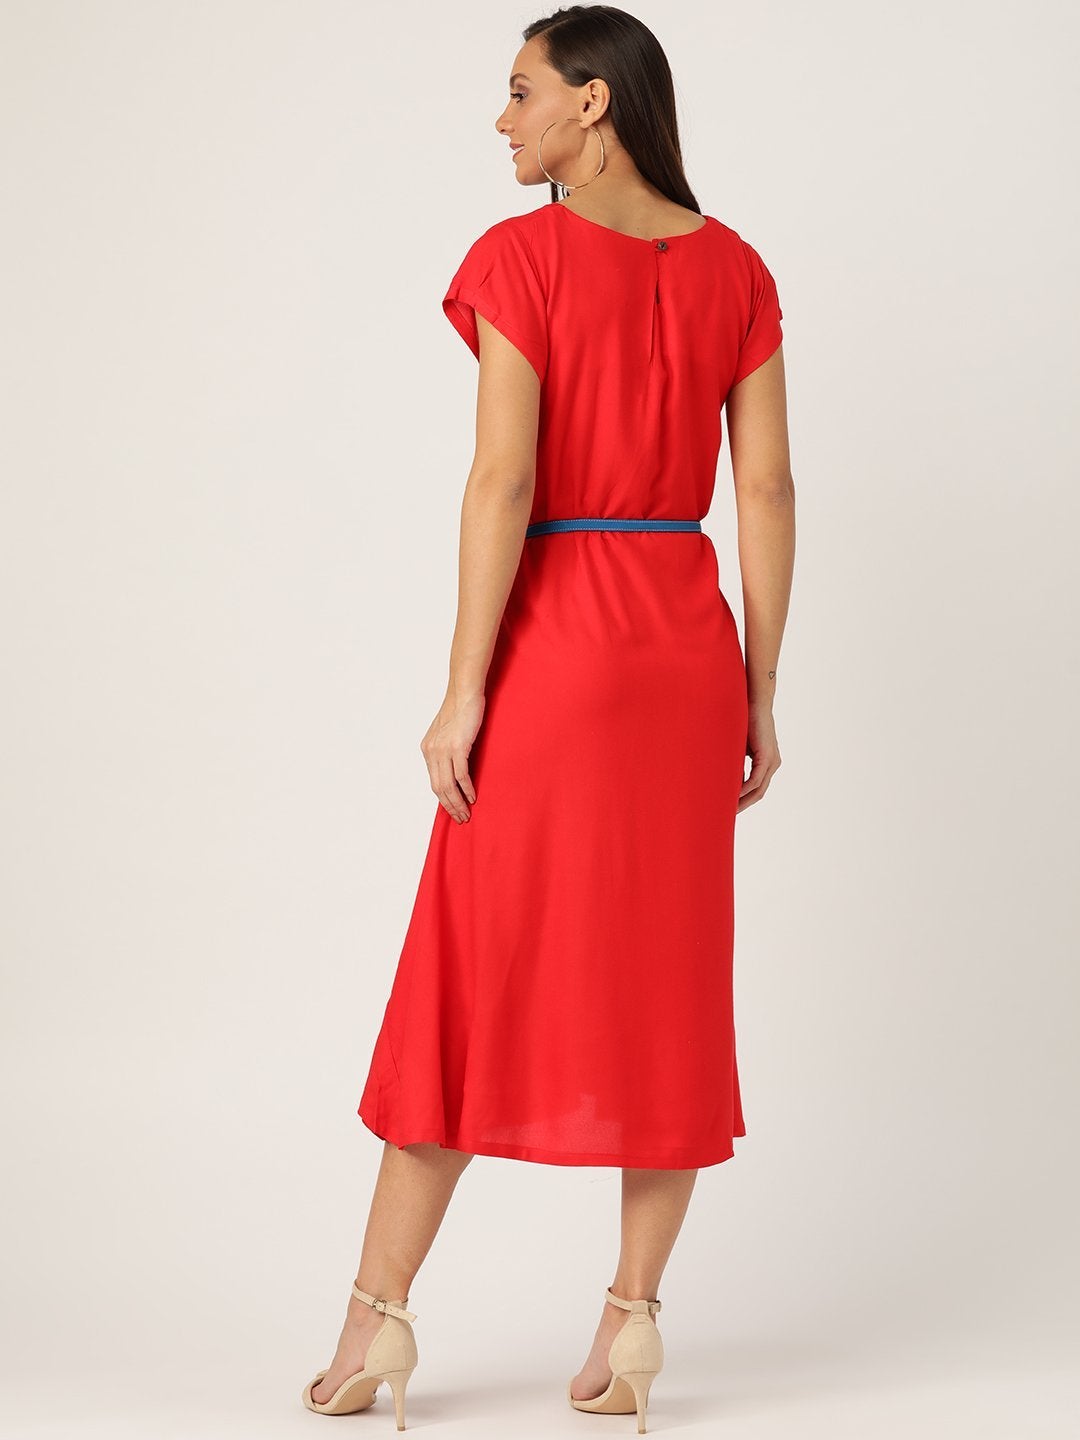 Women's Red Dress Blue Belt - InWeave